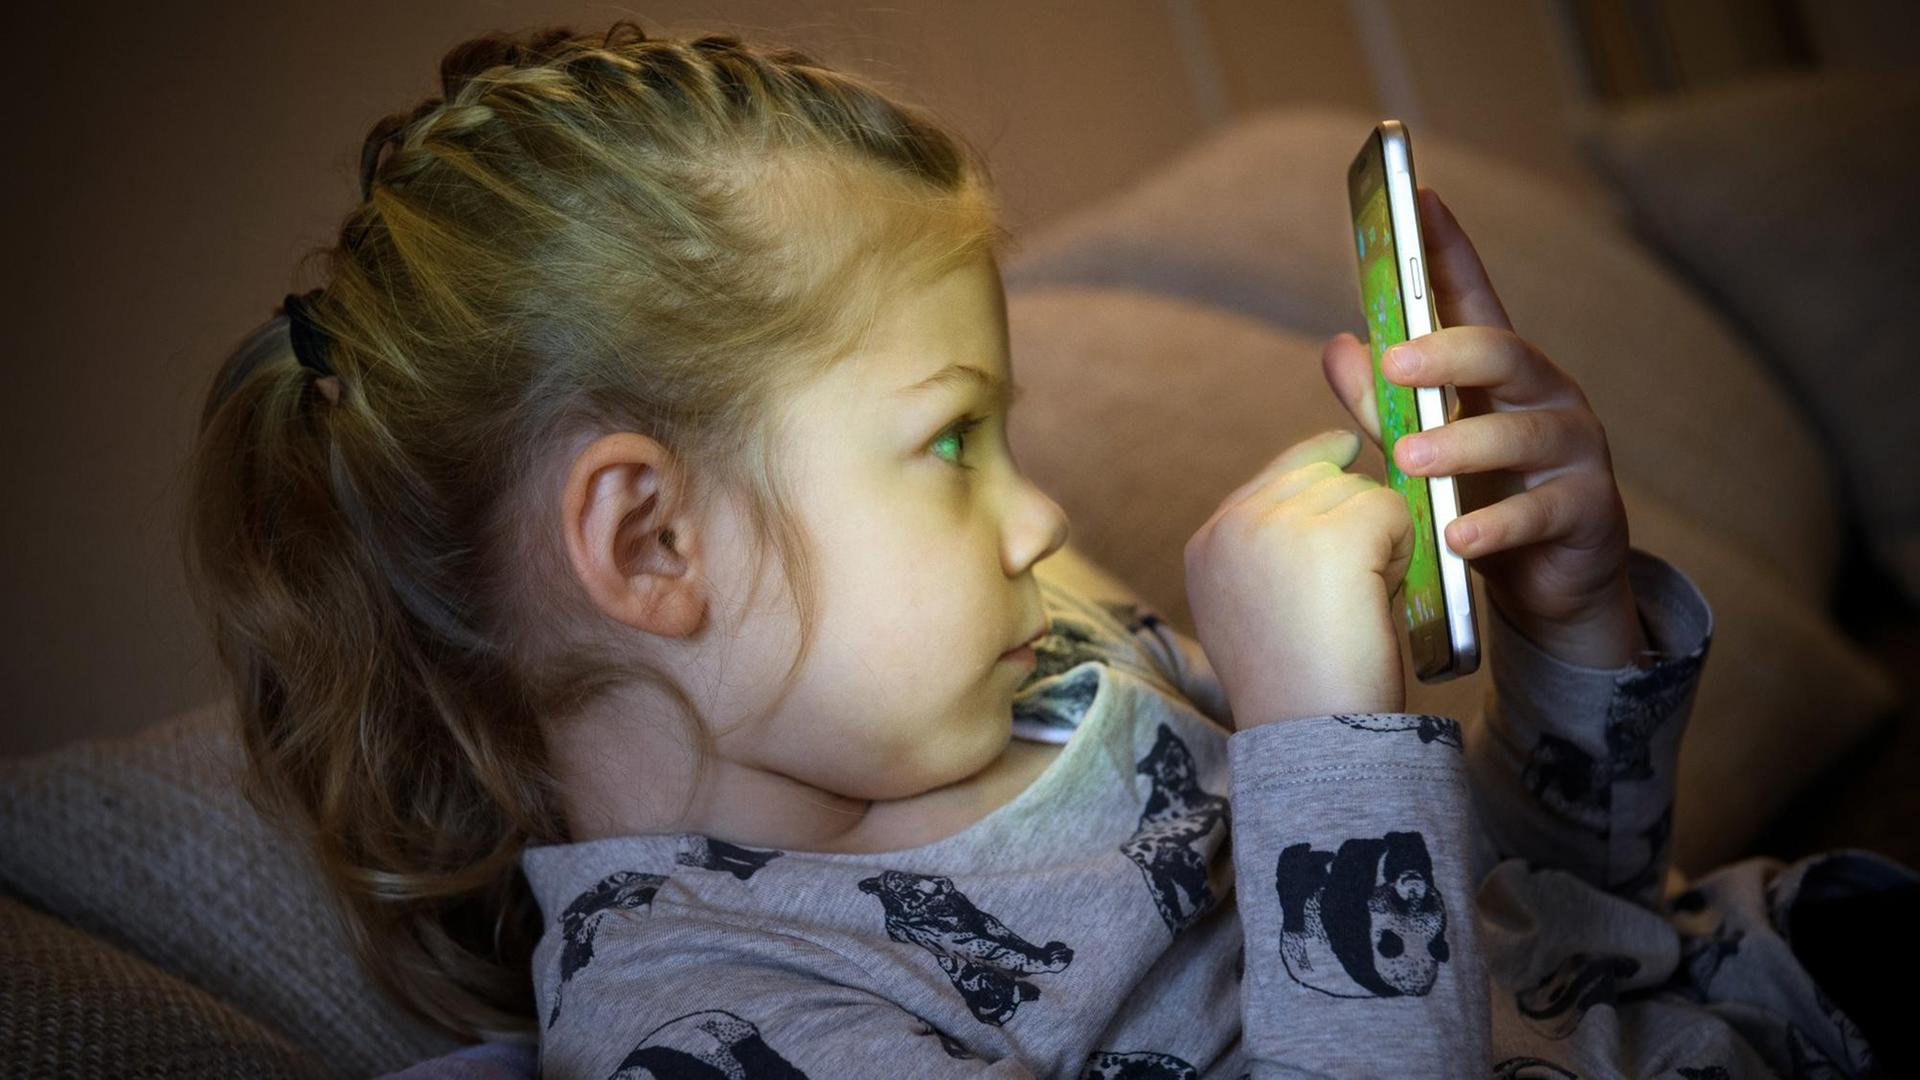  Ein kleines Mädchen spielt auf einem Smartphone.